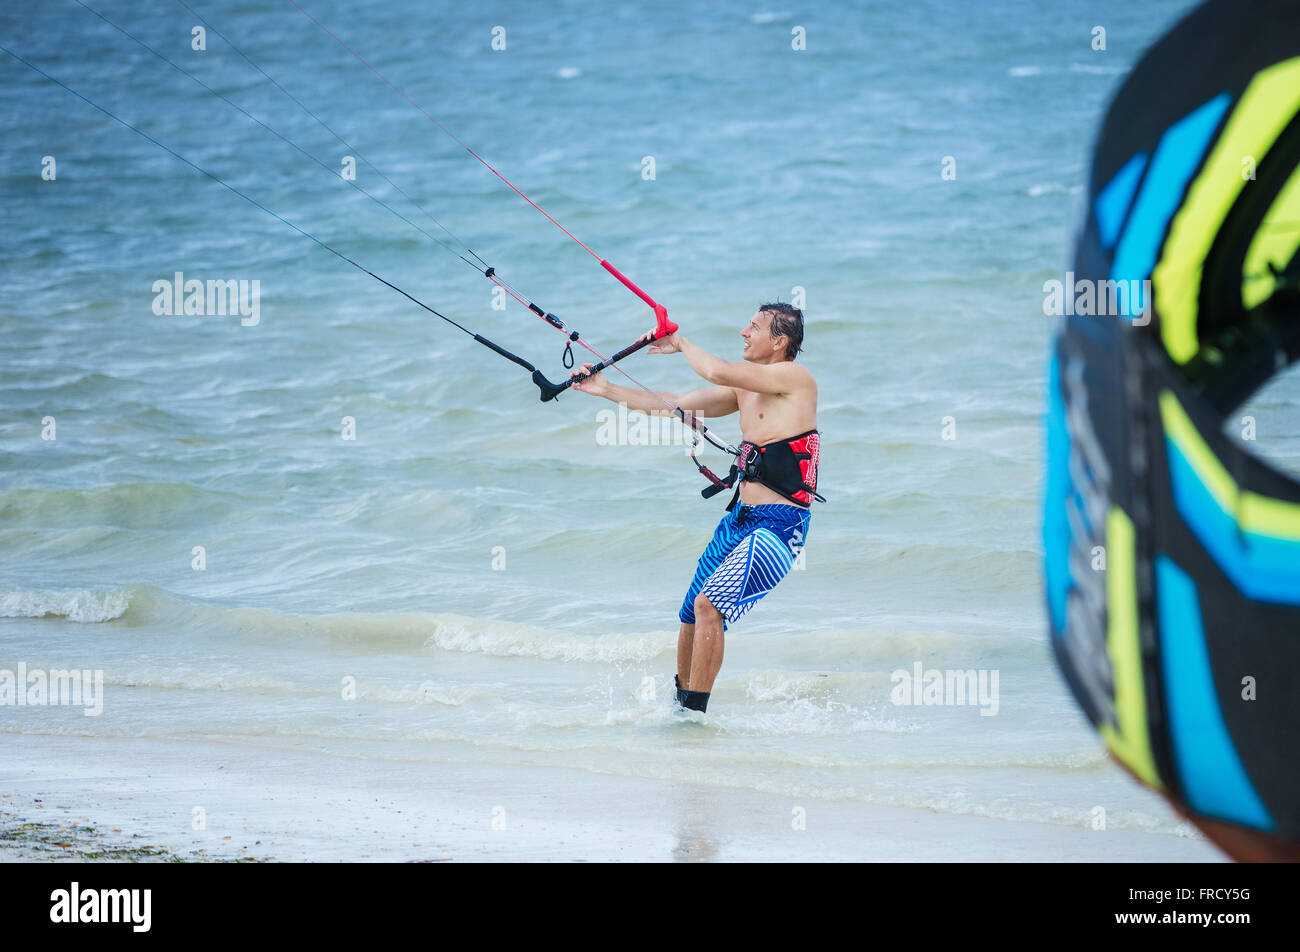 Kitesurfer maschio osservando il kite e tenendo un bar Foto Stock